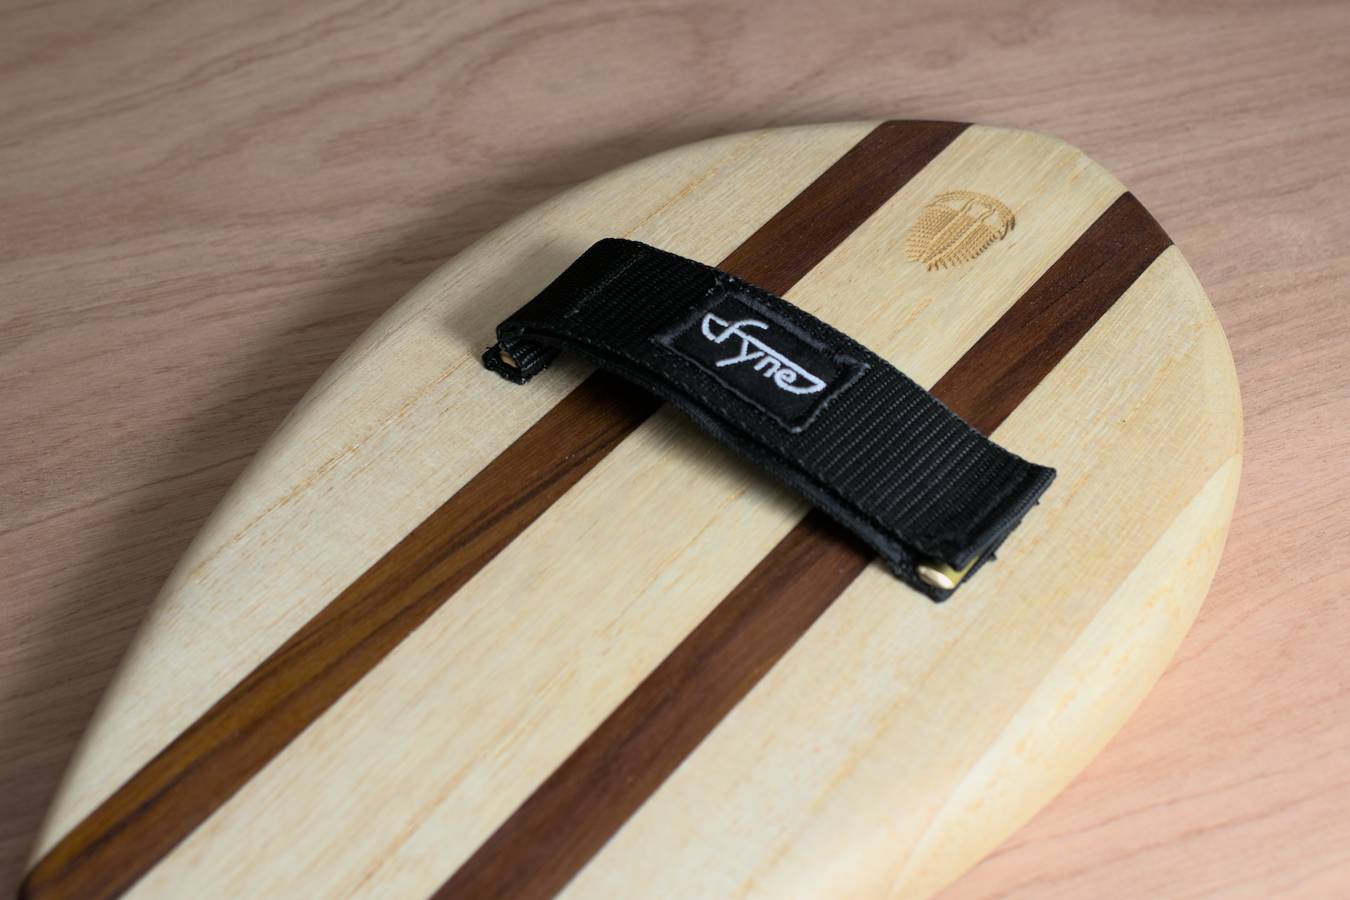 Wooden handplane - hand strap detail